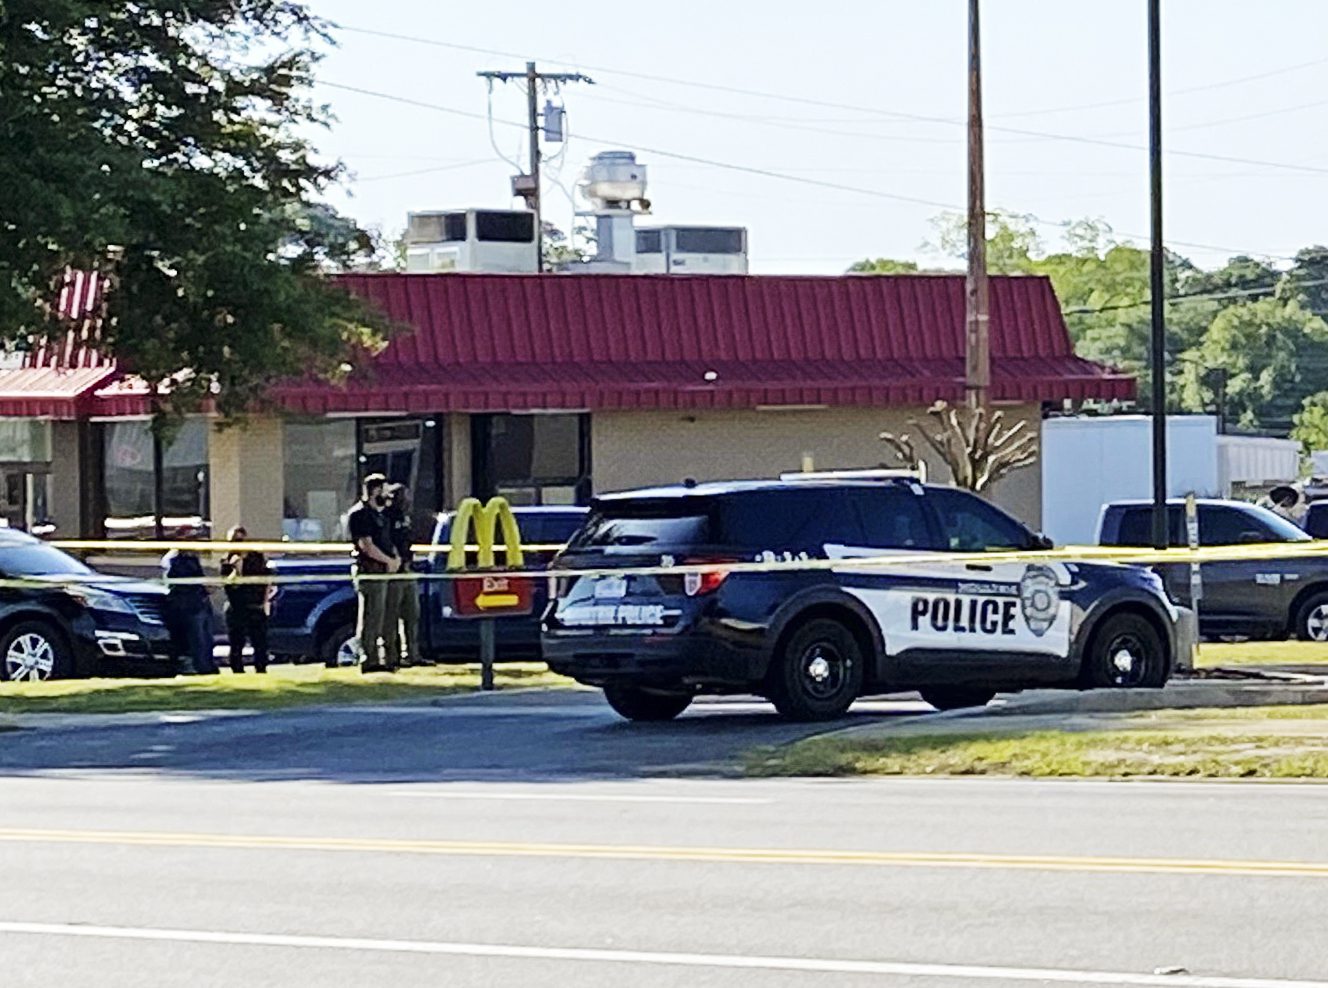 McDonald’s employee among 4 killed in Georgia